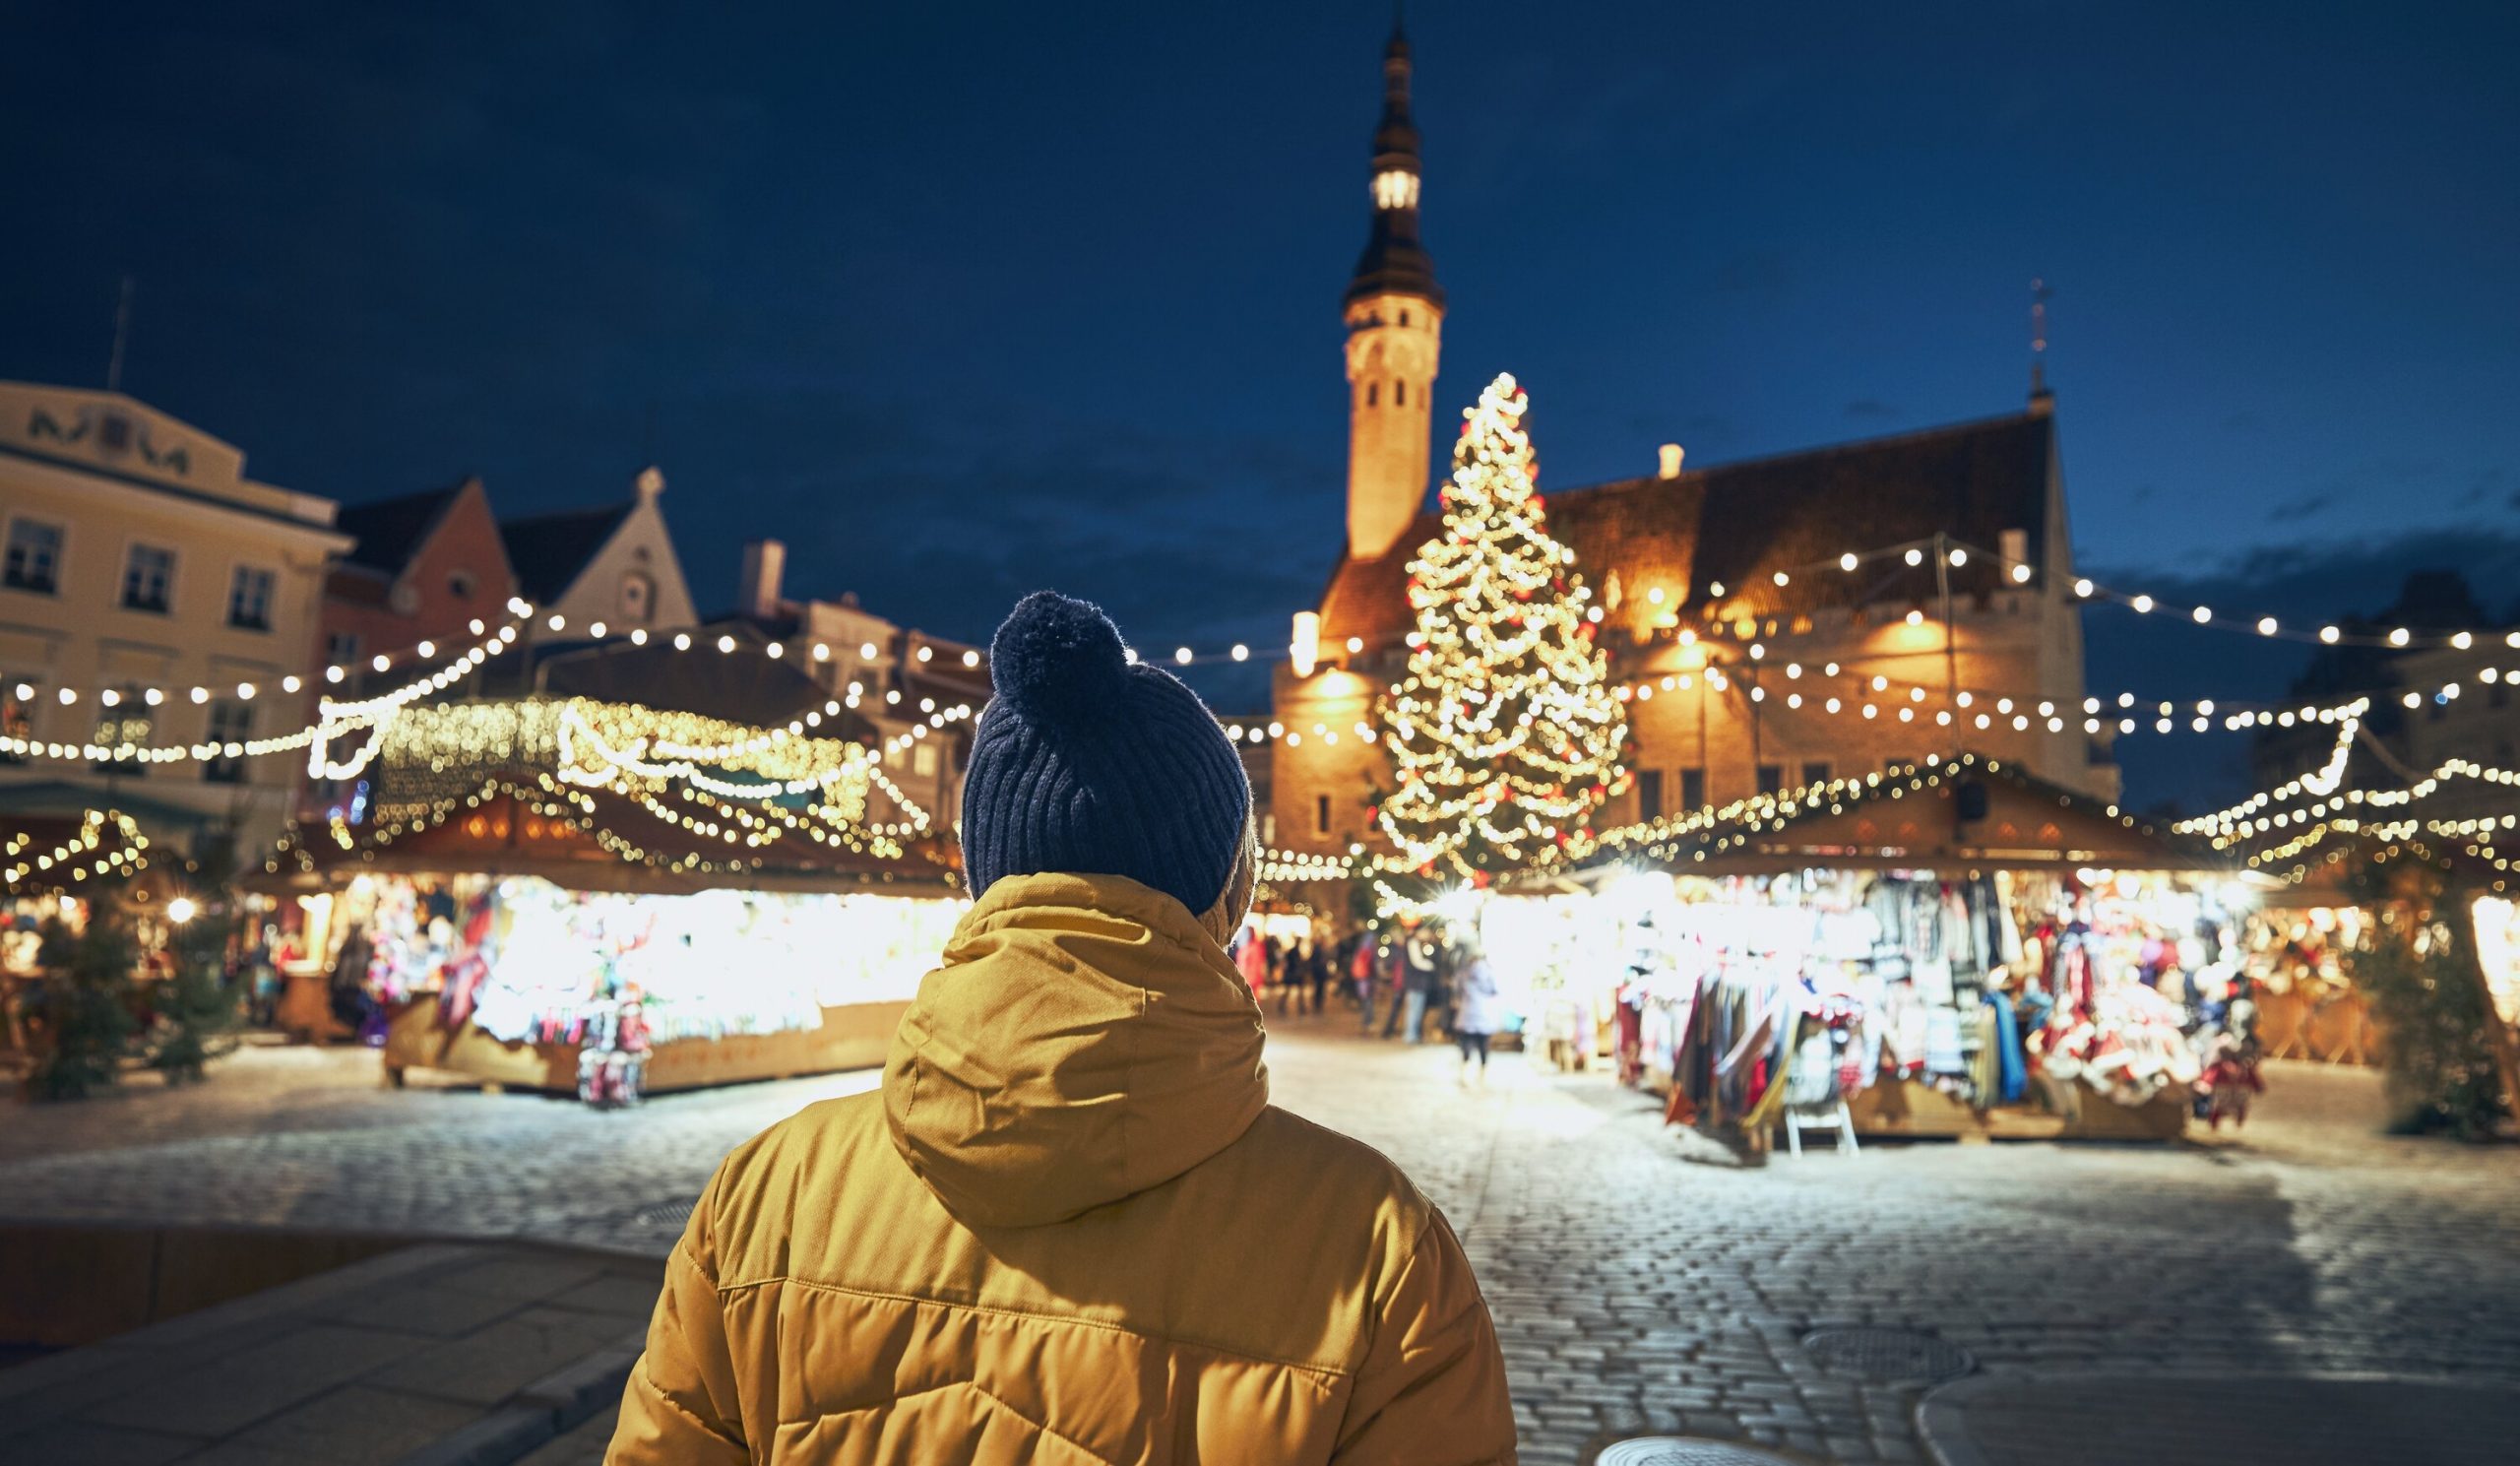 München anulează târgul de Crăciun din dorința de a nu „transmite un mesaj greșit”, în contextul reluării epidemiei